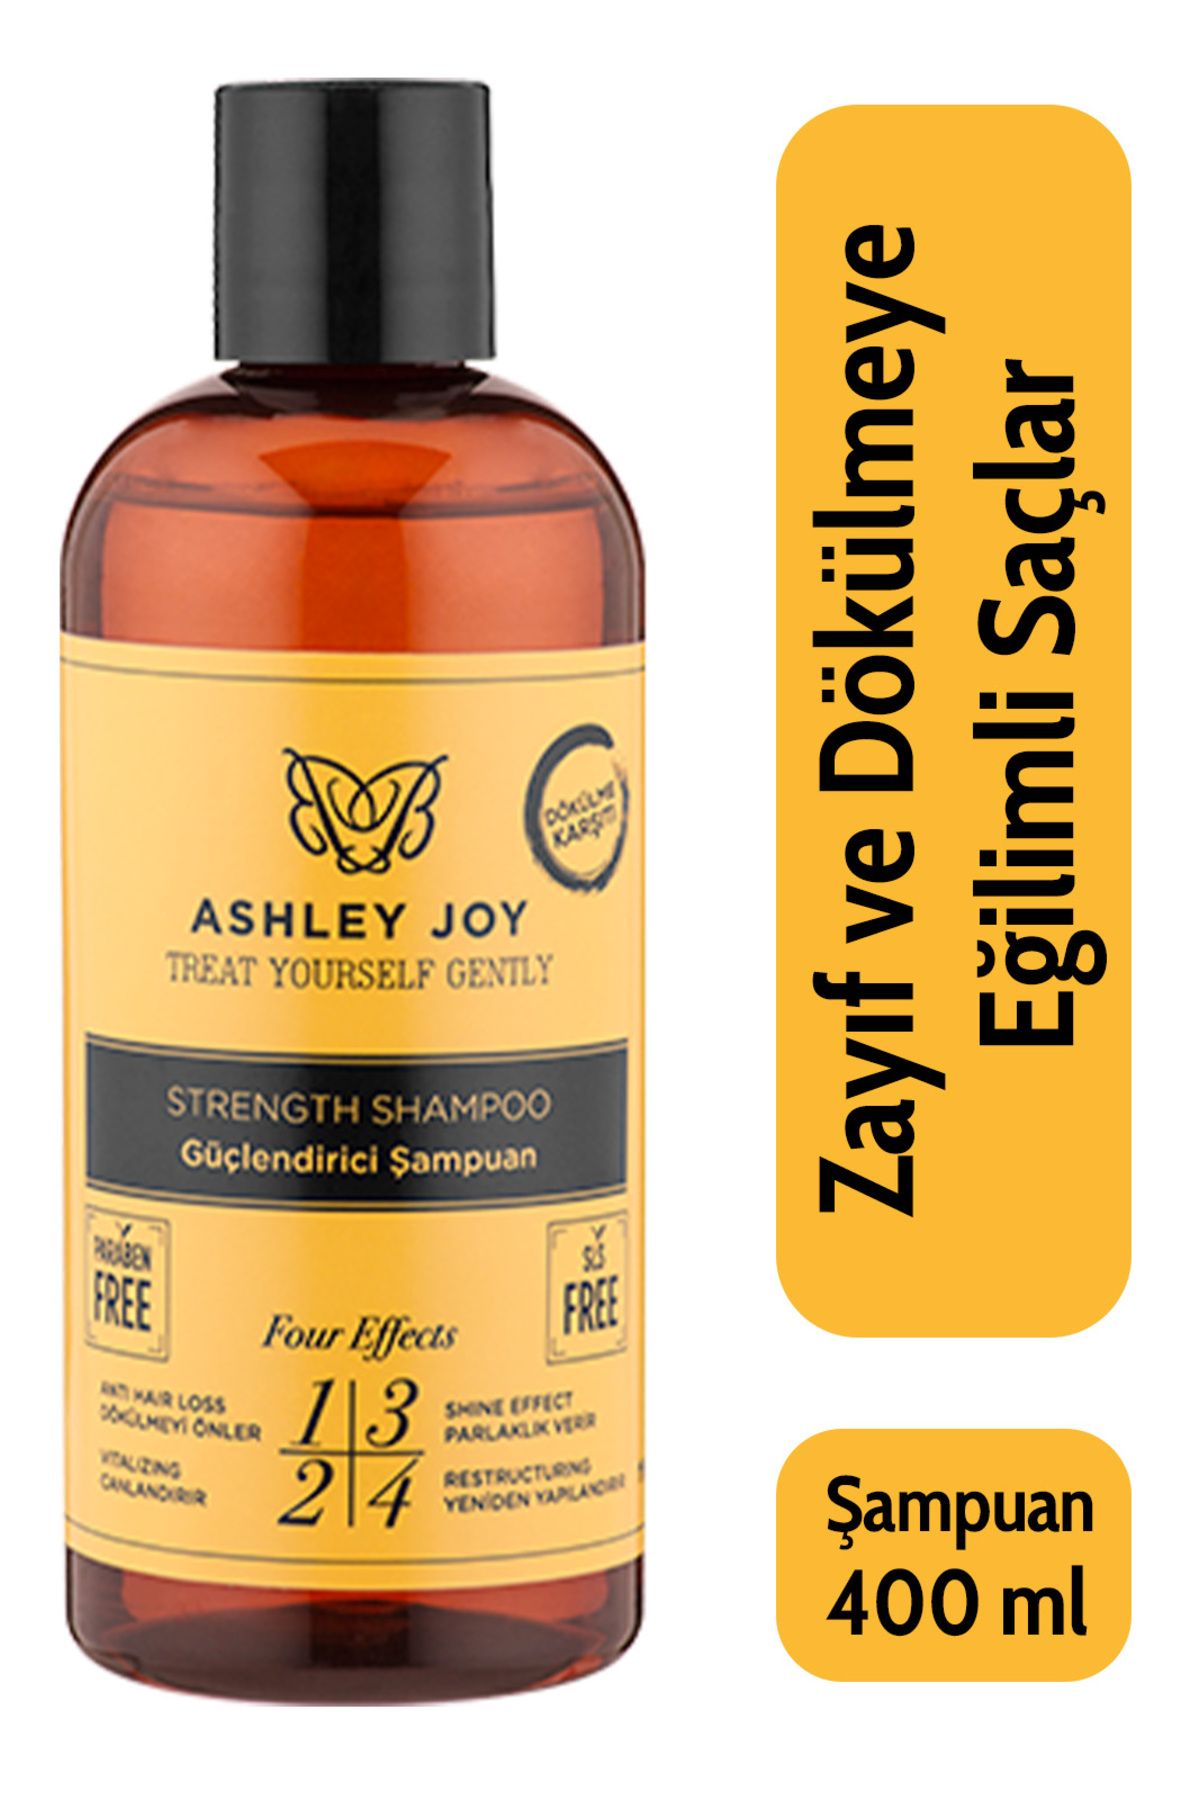 Ashley Joy Dökülme Karşıtı Keratin Ve Kafein Içeren Sülfatsız Güçlendirici Şampuan 400 ml